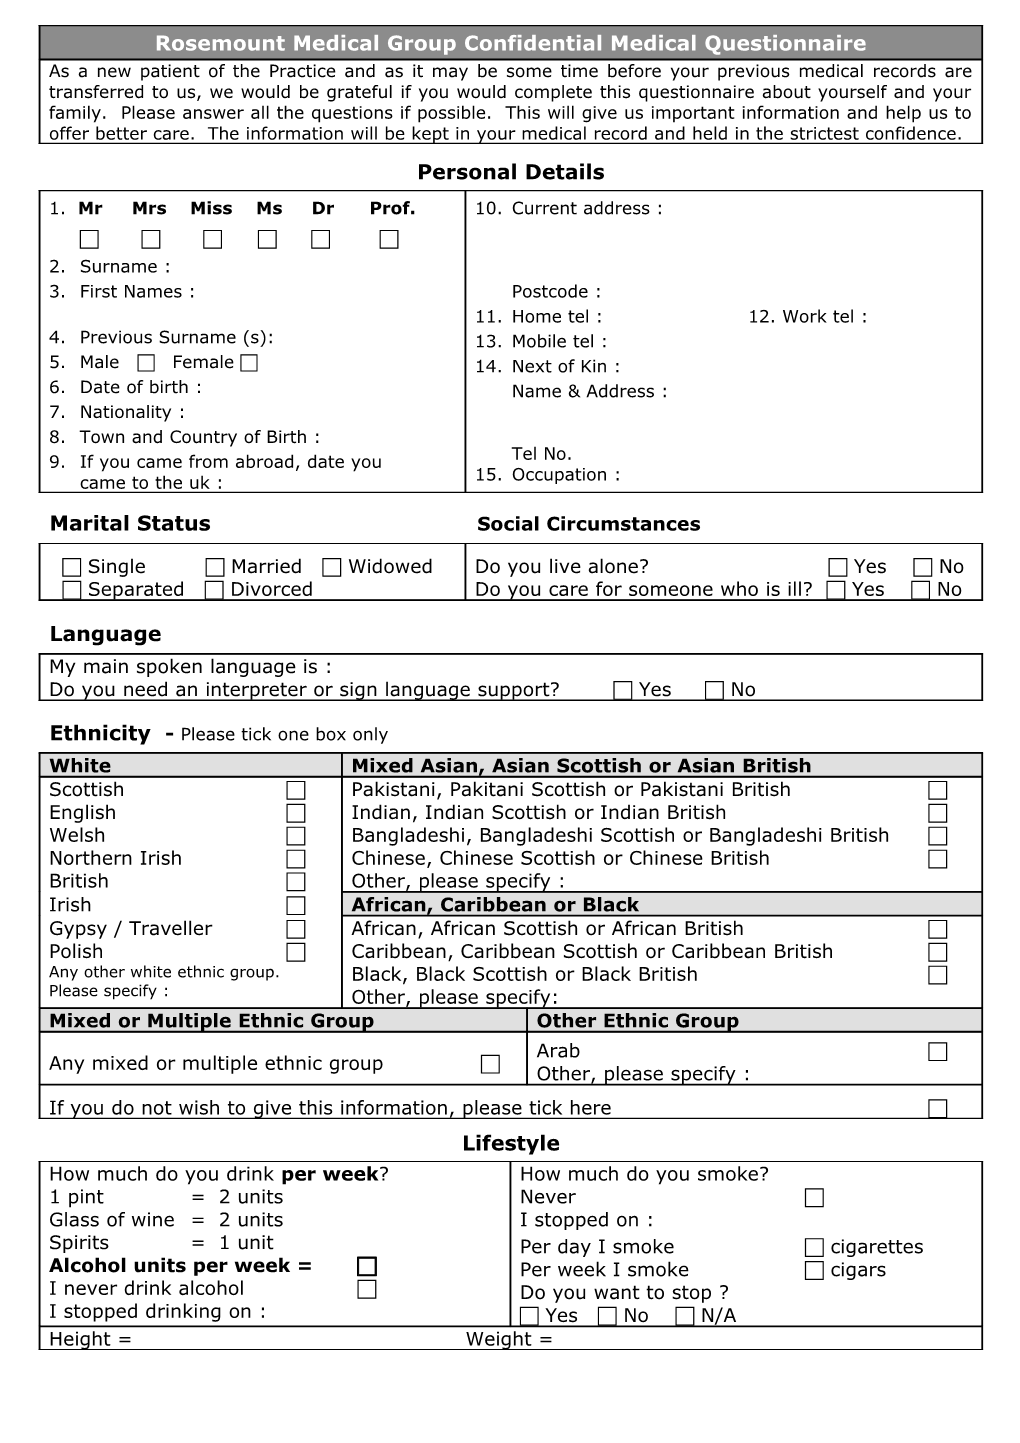 Rosemount Medical Group Patient Registration Form